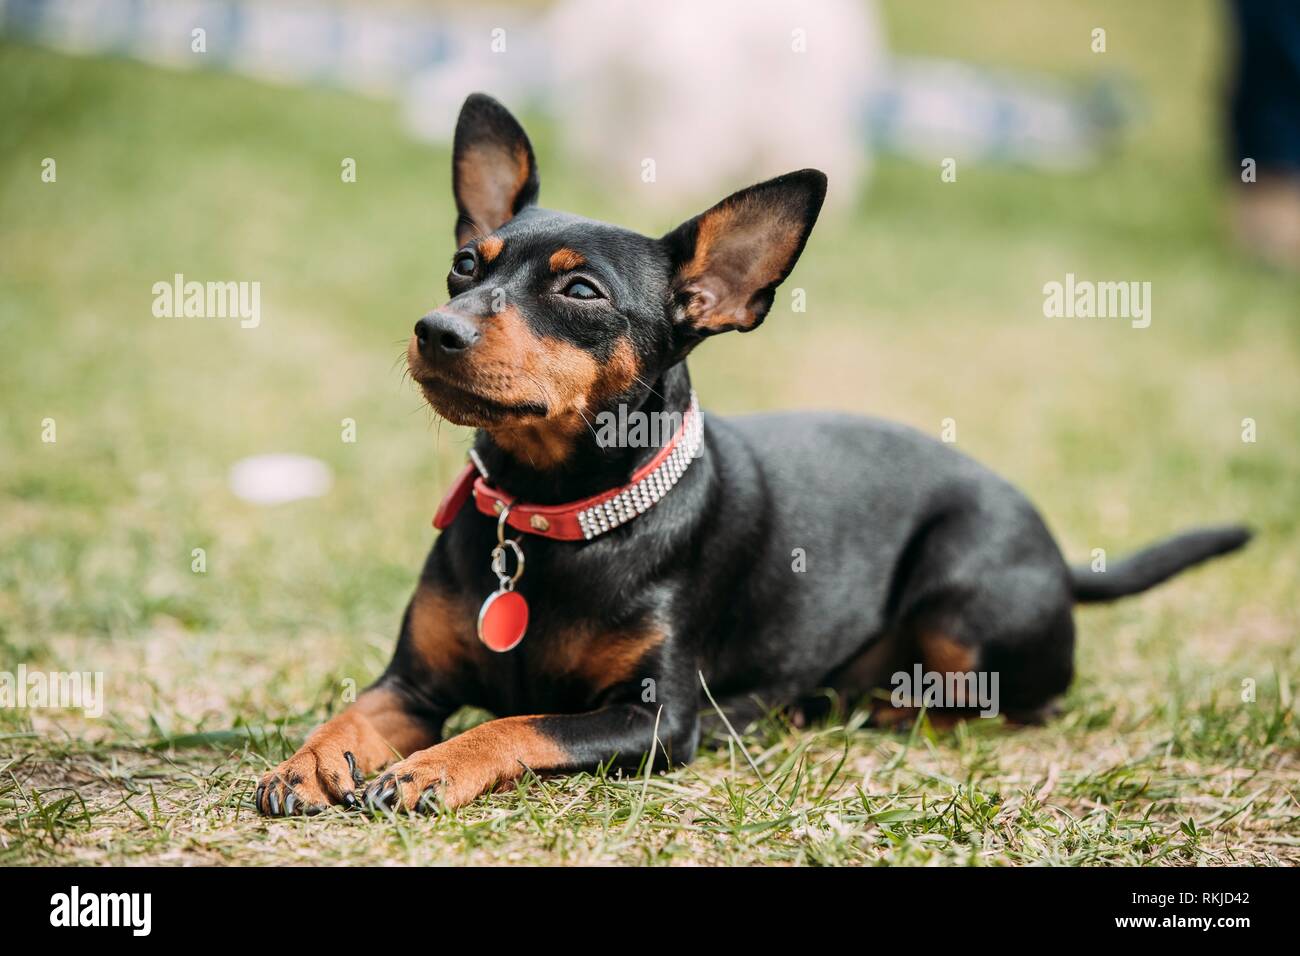 Zwergpinscher / Zwergpinscher / min Pin Hund trägt Mantel im Garten  Stockfotografie - Alamy